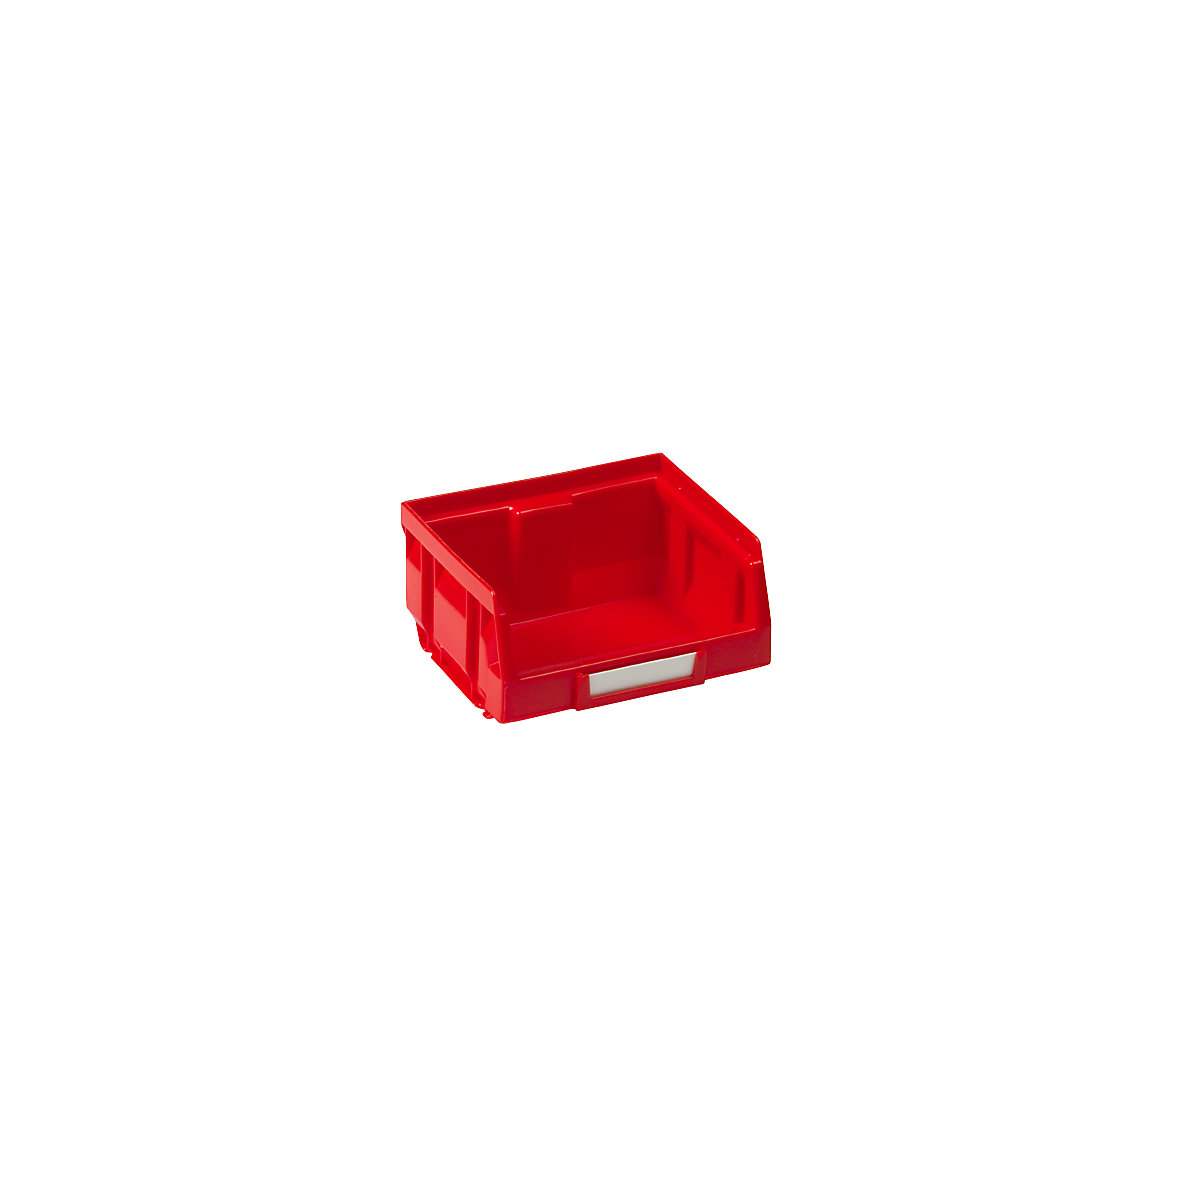 Sichtlagerkasten aus Polyethylen, LxBxH 88 x 105 x 54 mm, rot, VE 50 Stk-6